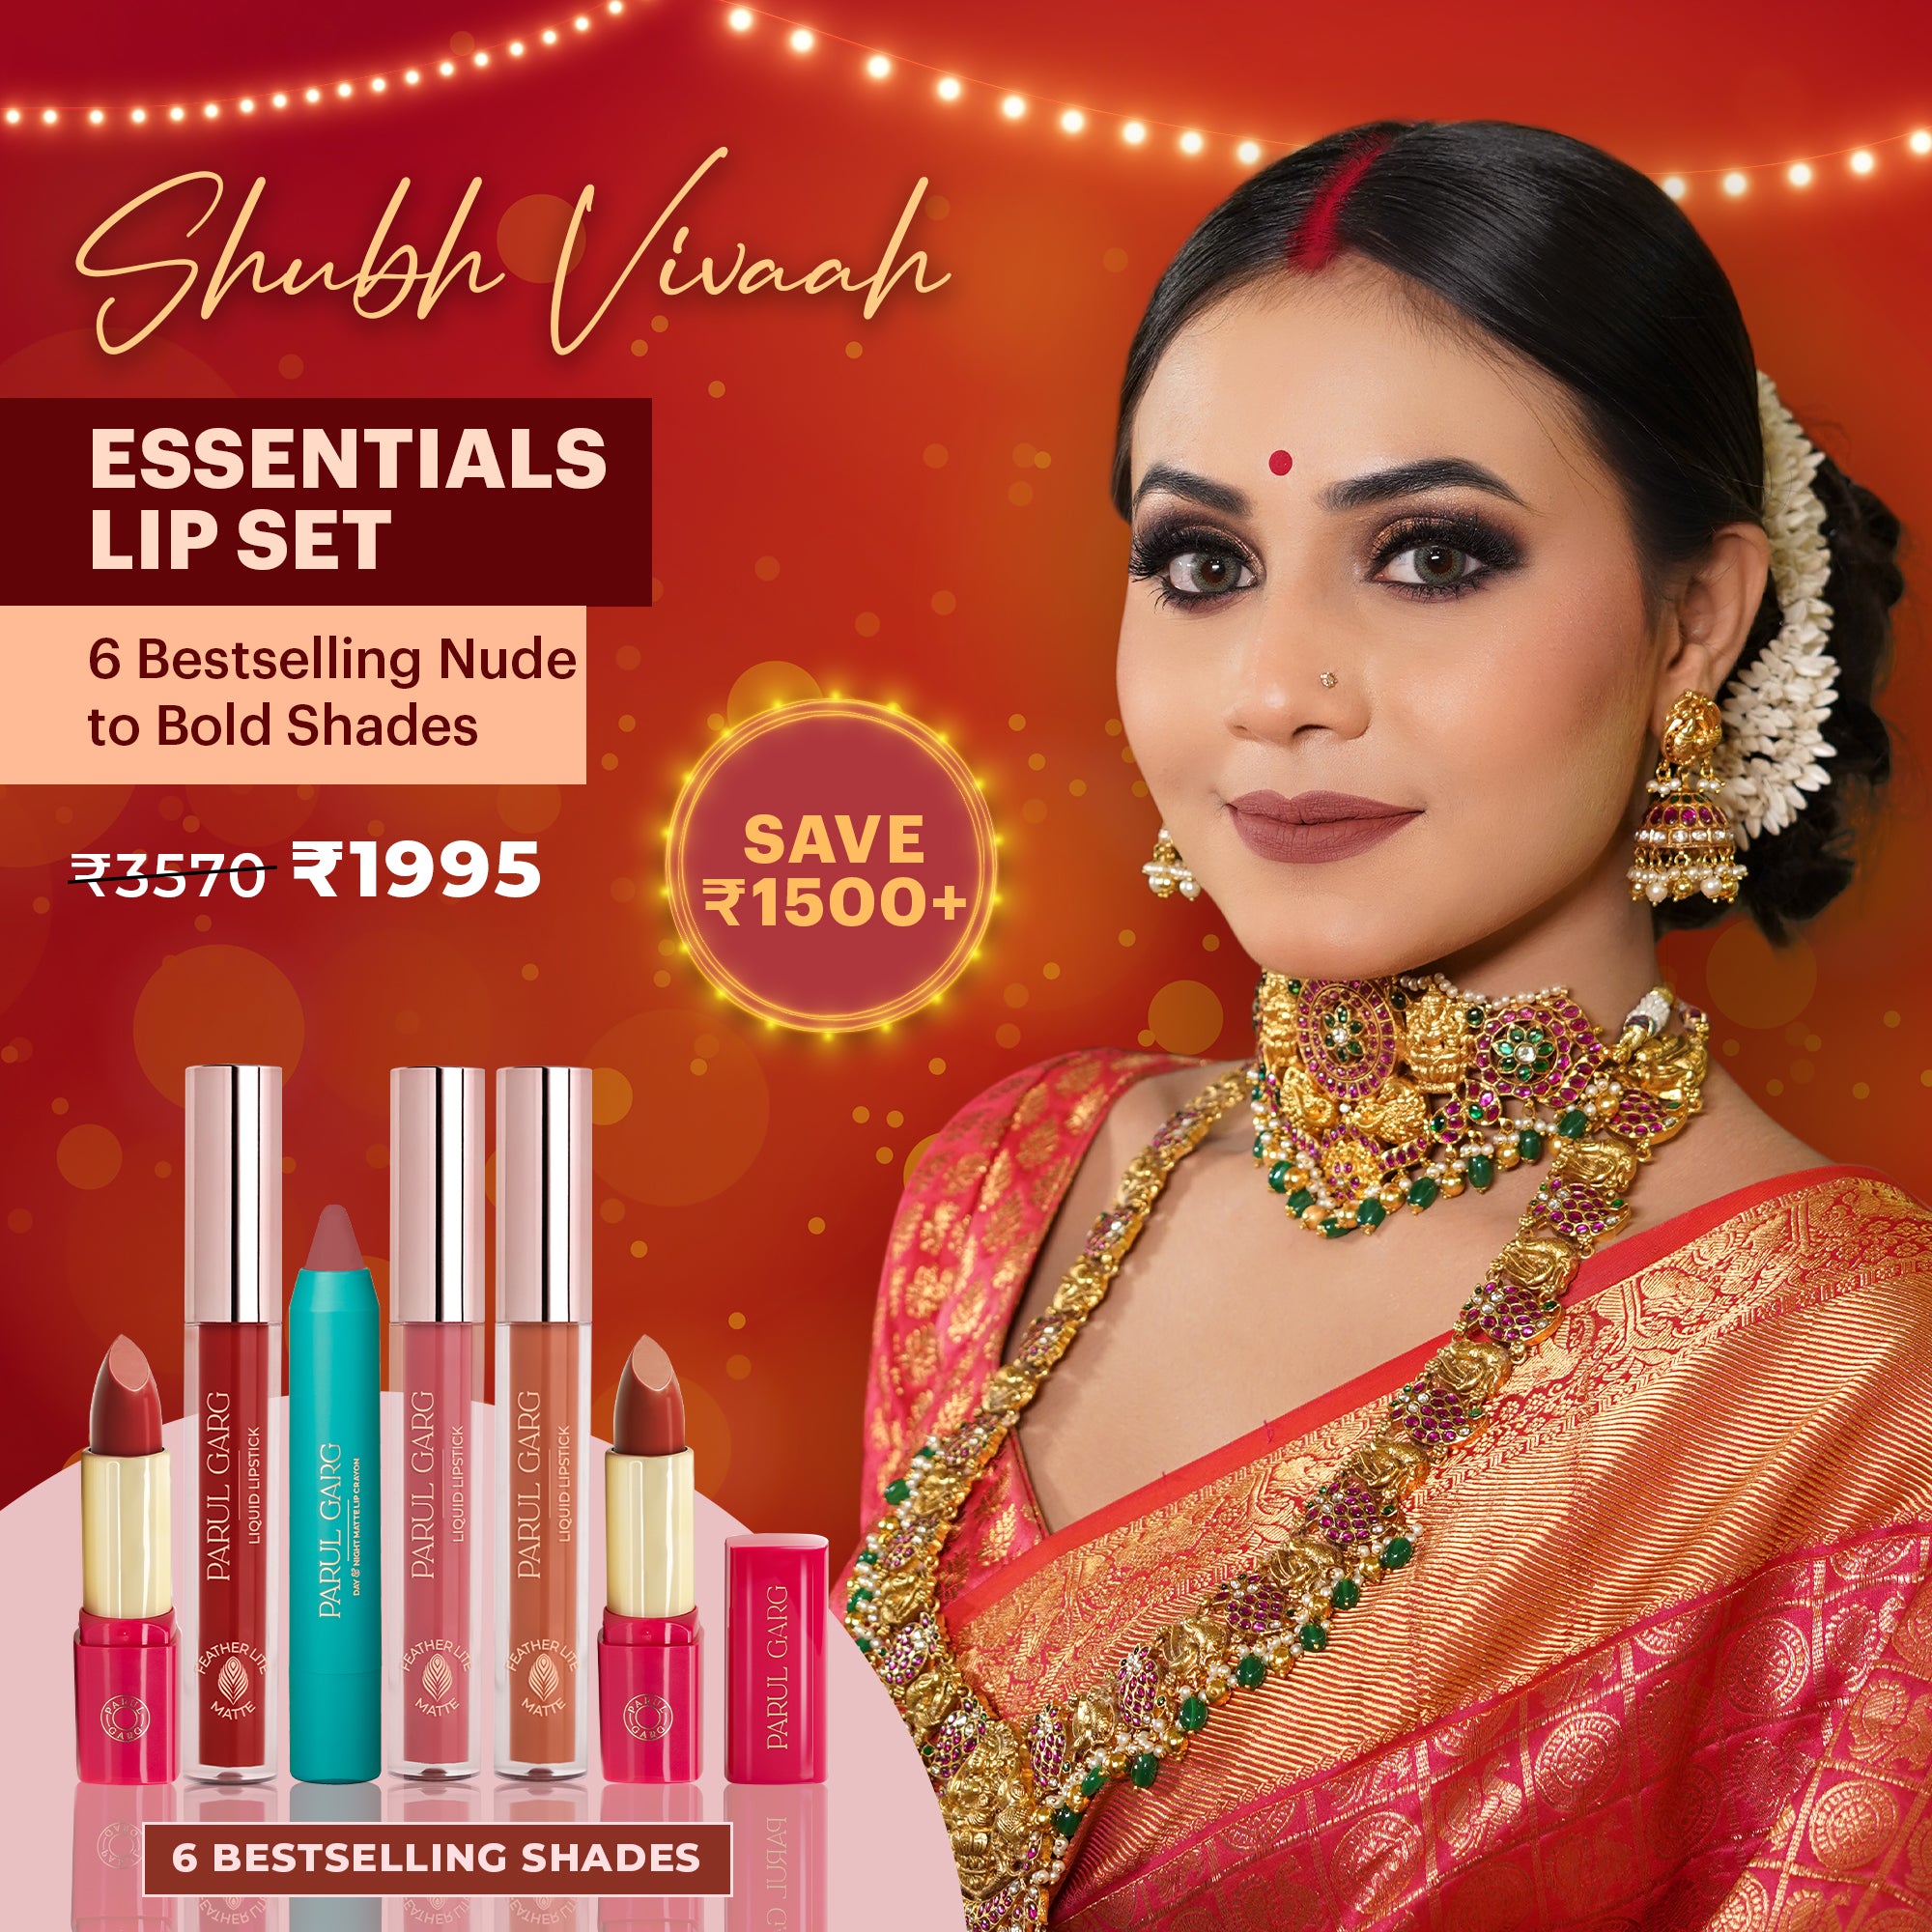 Shubh Vivaah Essentials Lip Set: Bestselling Shades